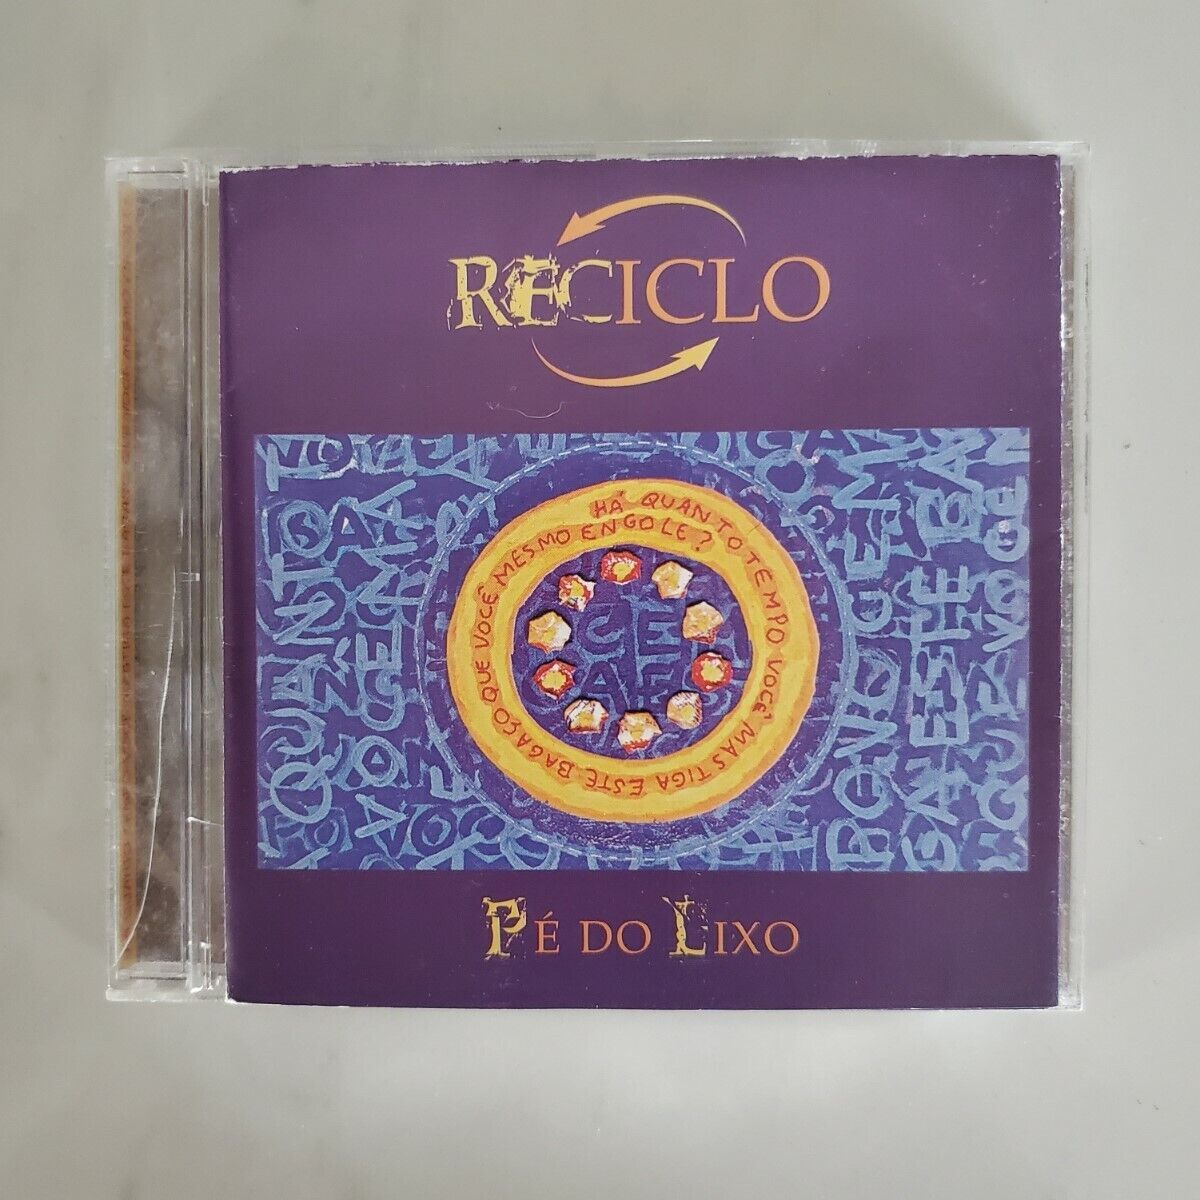 Reciclo - CD - Pe Do Lixo 海外 即決_Reciclo - CD - Pe 1